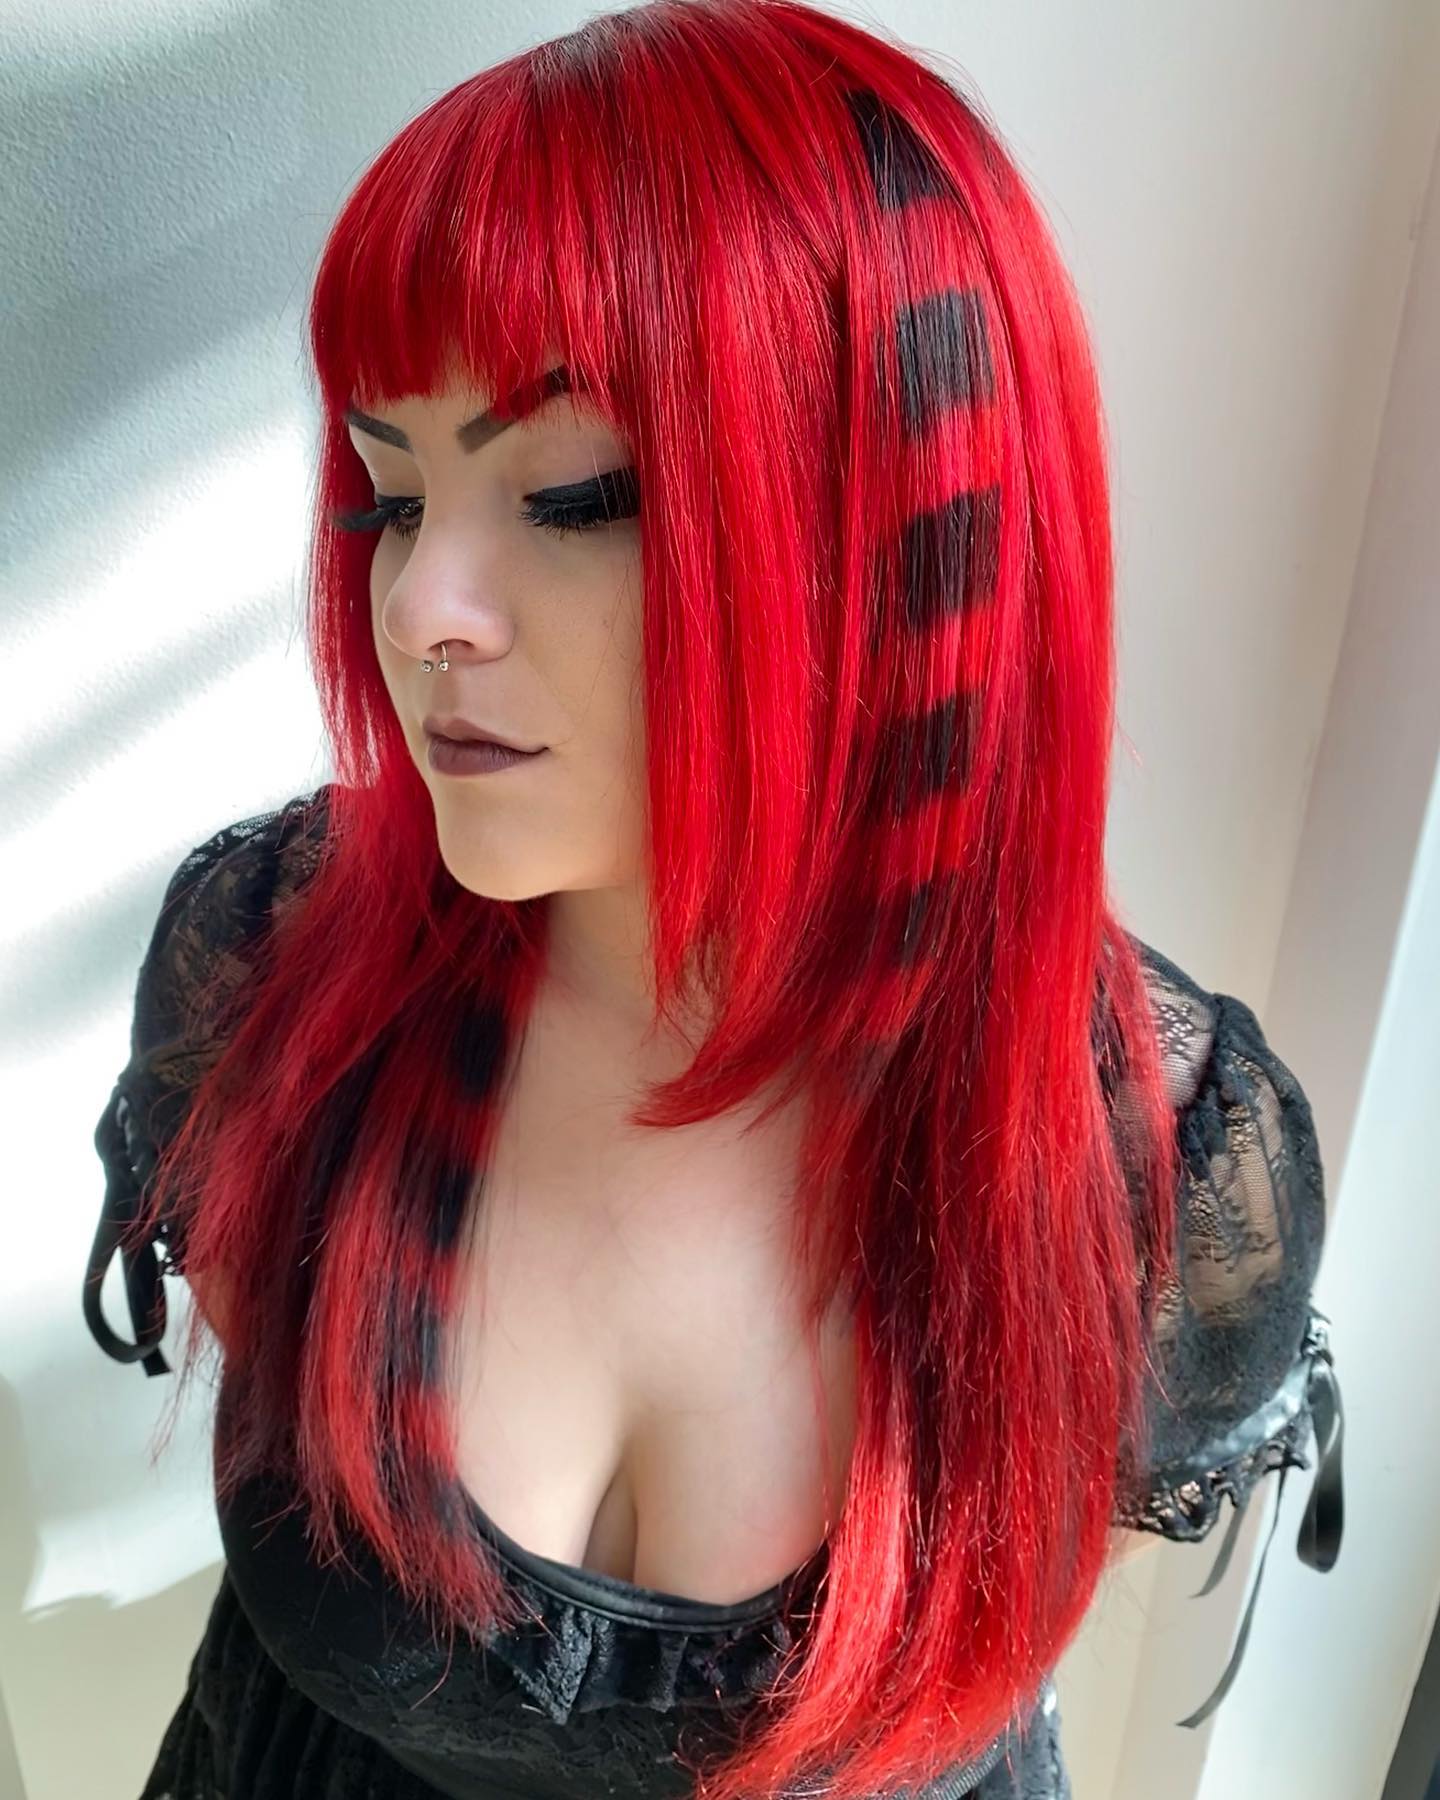 pelo rojo fuego con dibujos negros